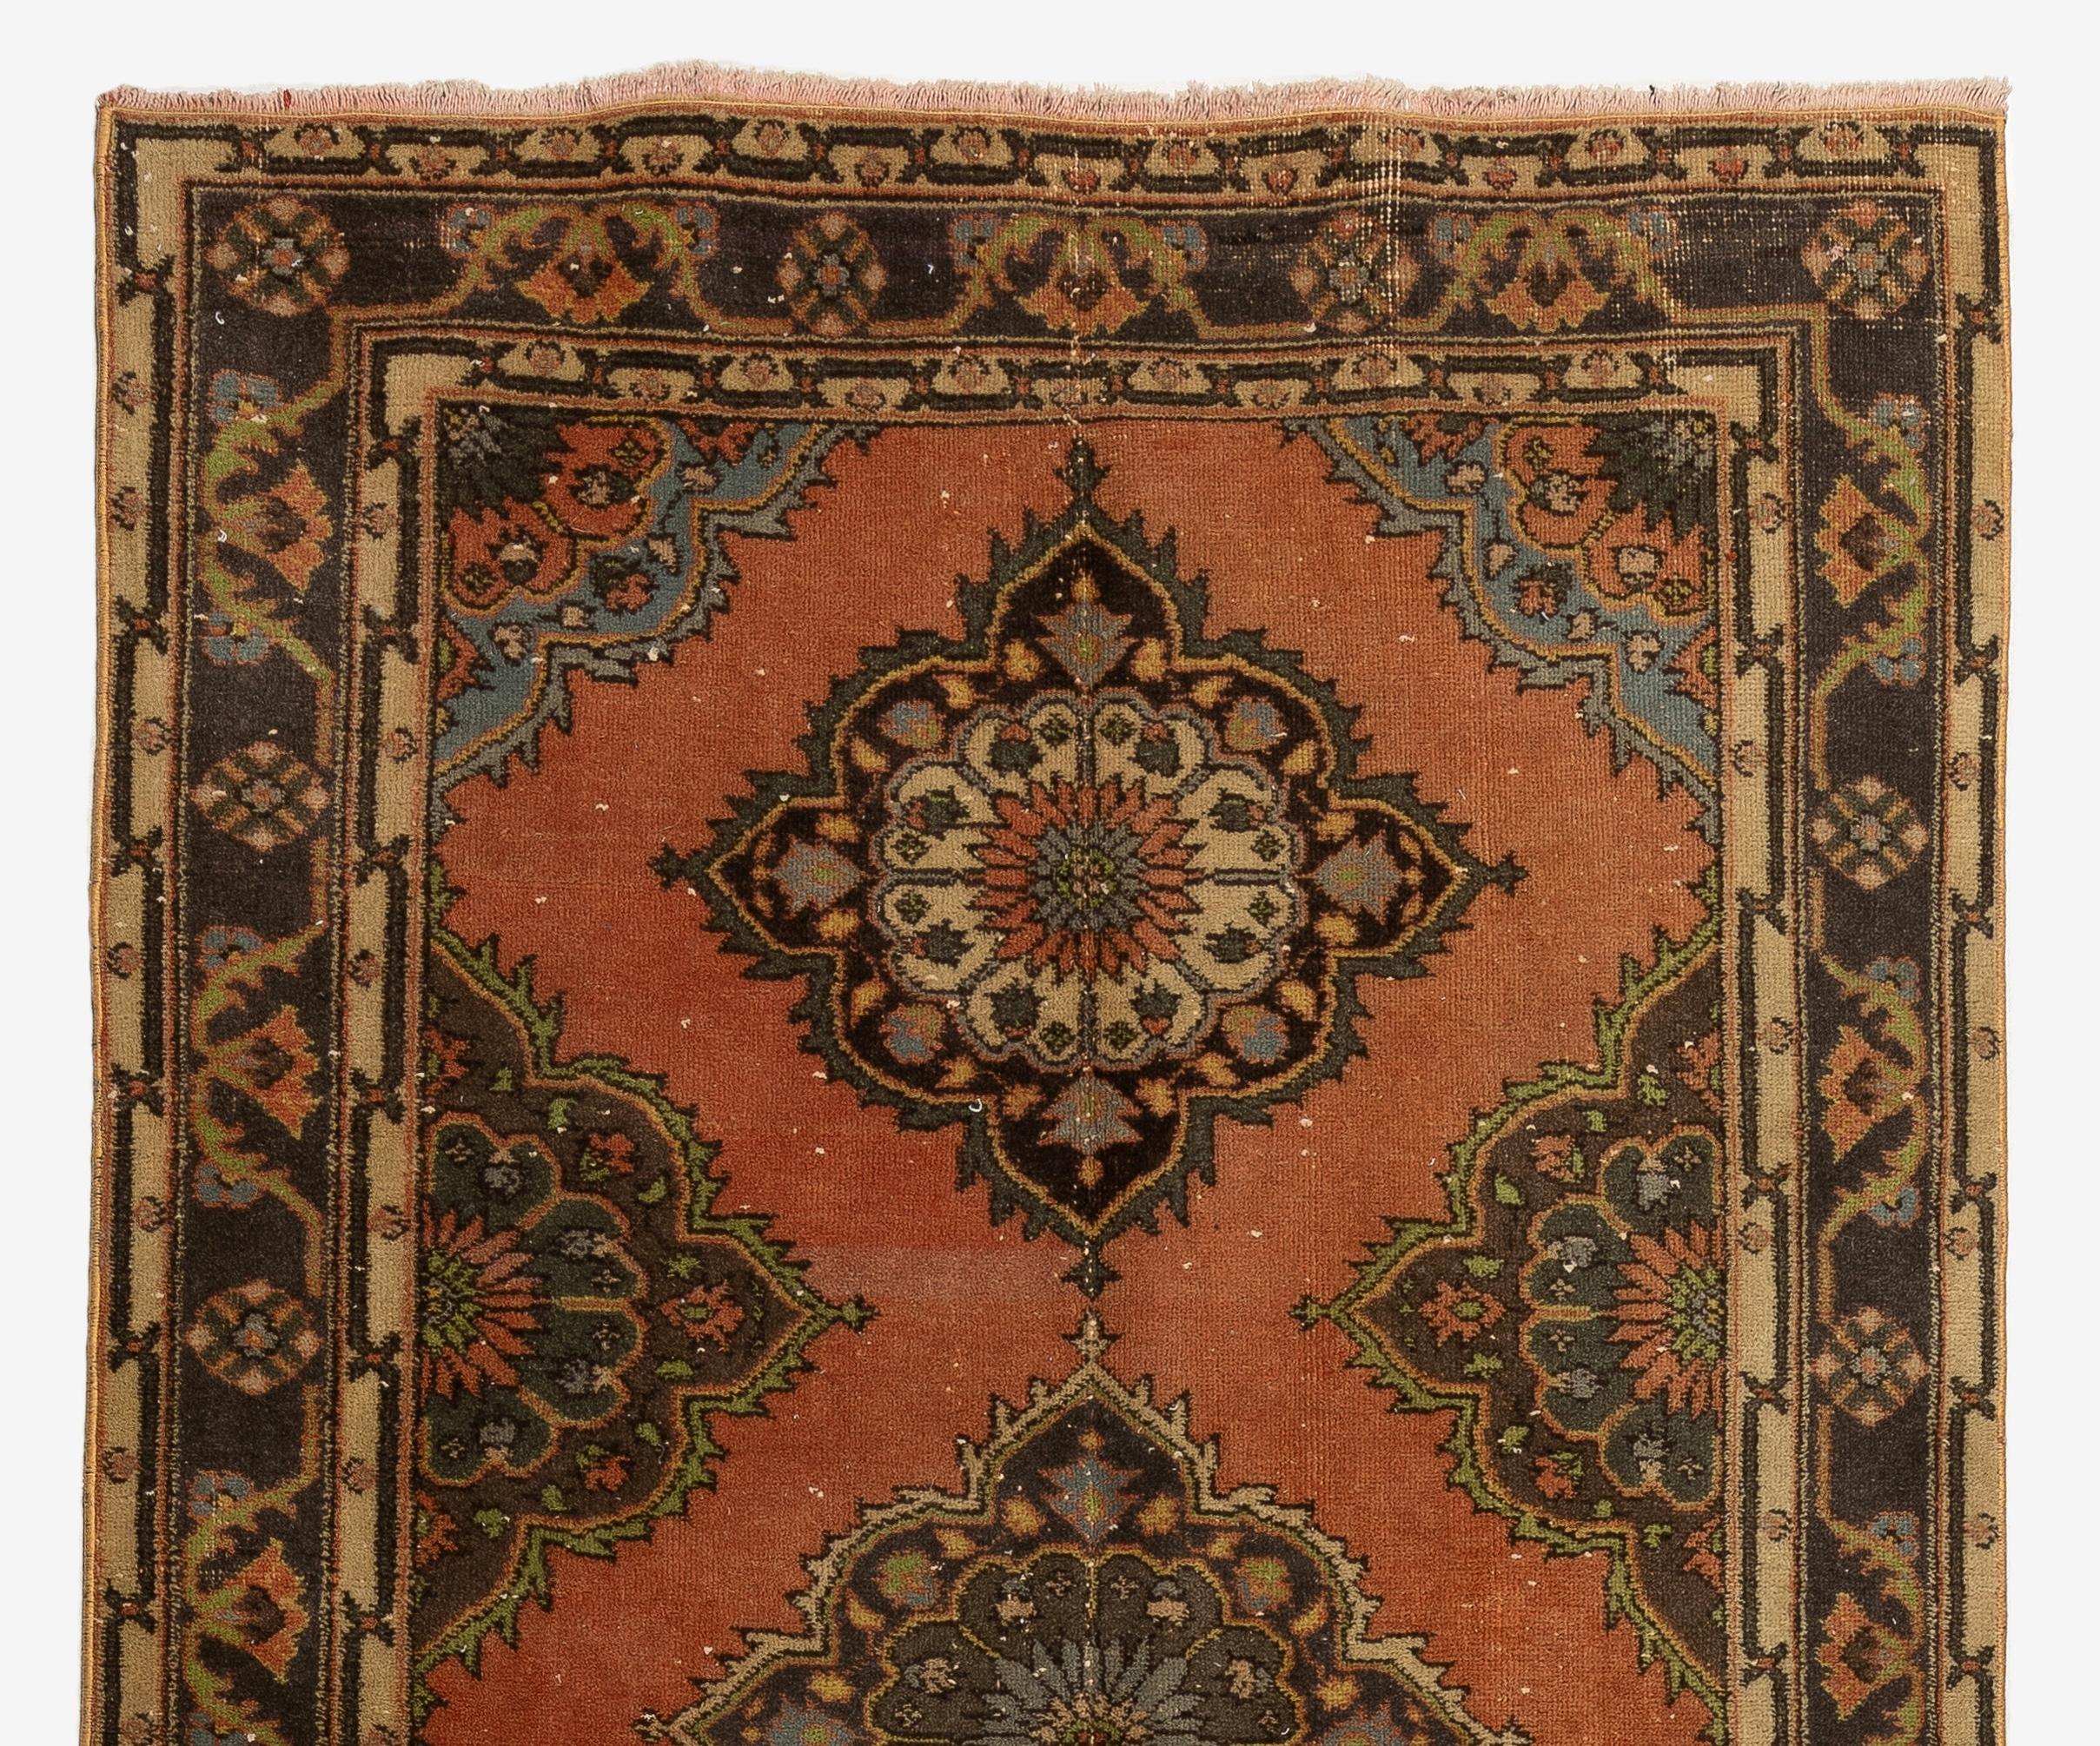 Un tapis de course turc vintage dans les tons rouge, marron et beige. Il a été noué à la main dans les années 1960 avec une base en laine basse sur coton et présente un motif de médaillons multiples. Elle est en très bon état, lavée par un